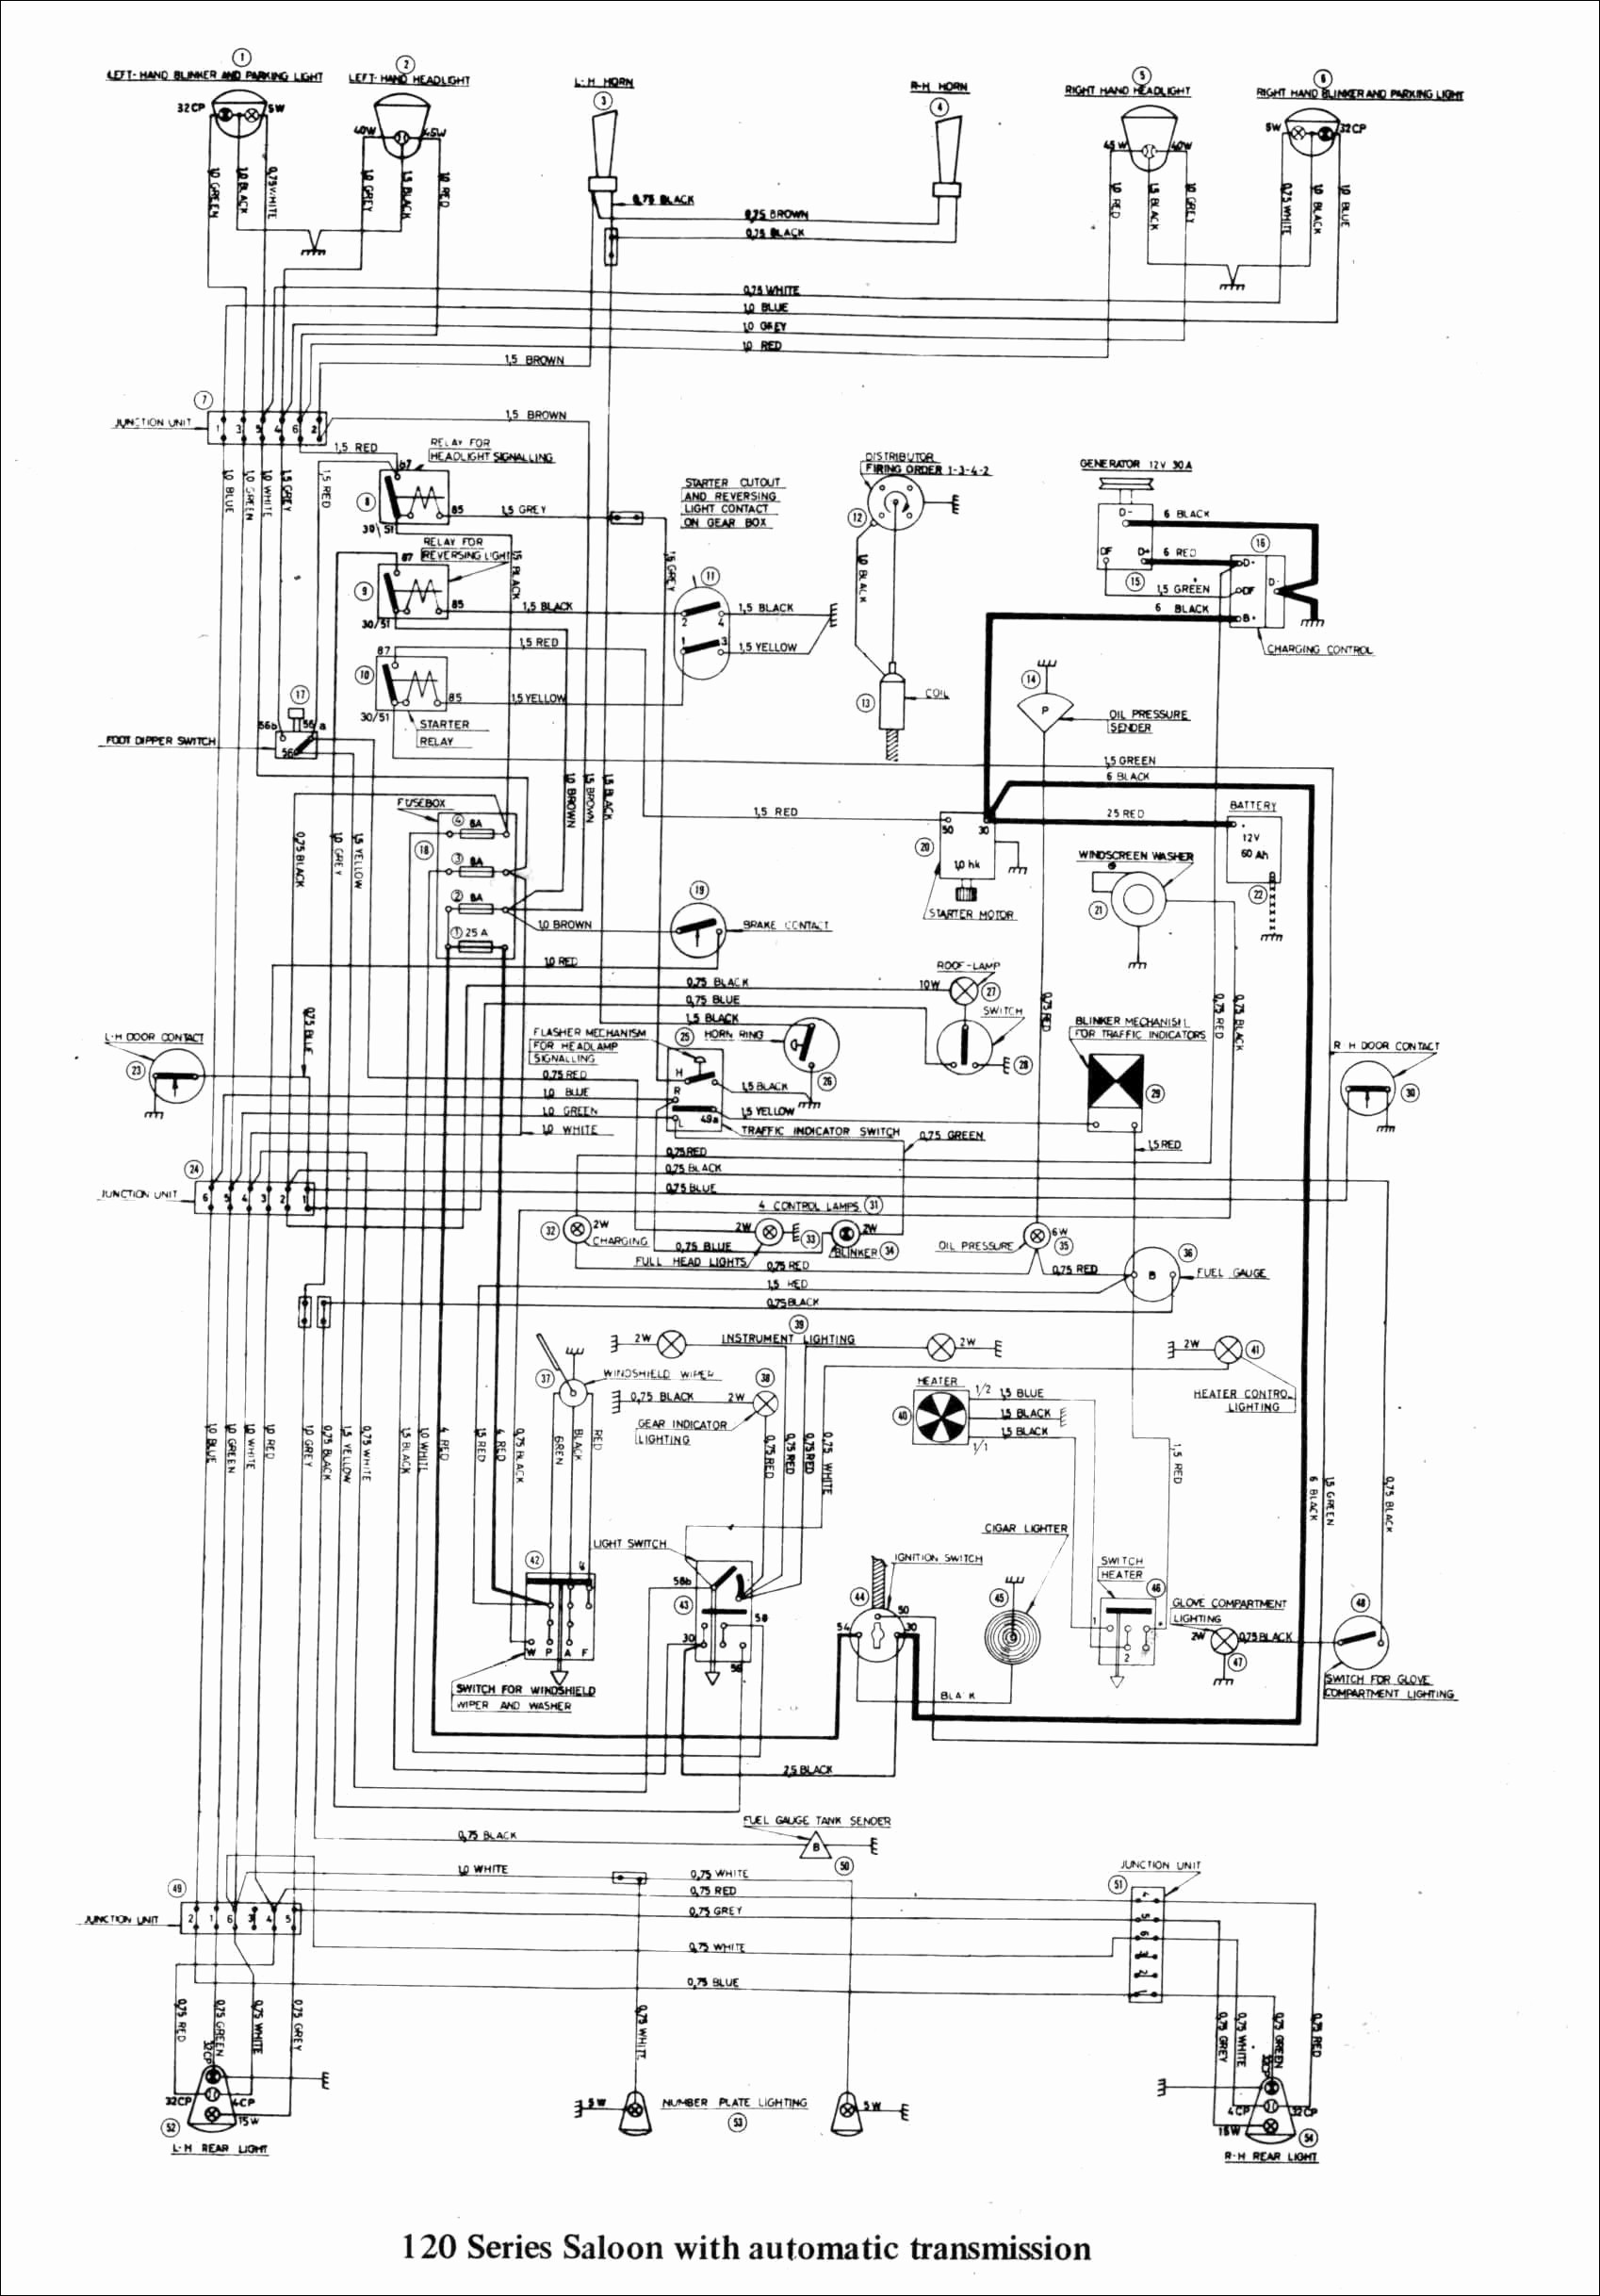 1999 International 4700 Wiring Diagram Fresh Volvo Truck Wiring Diagrams Horn Diagram Luxury Sw Em Od